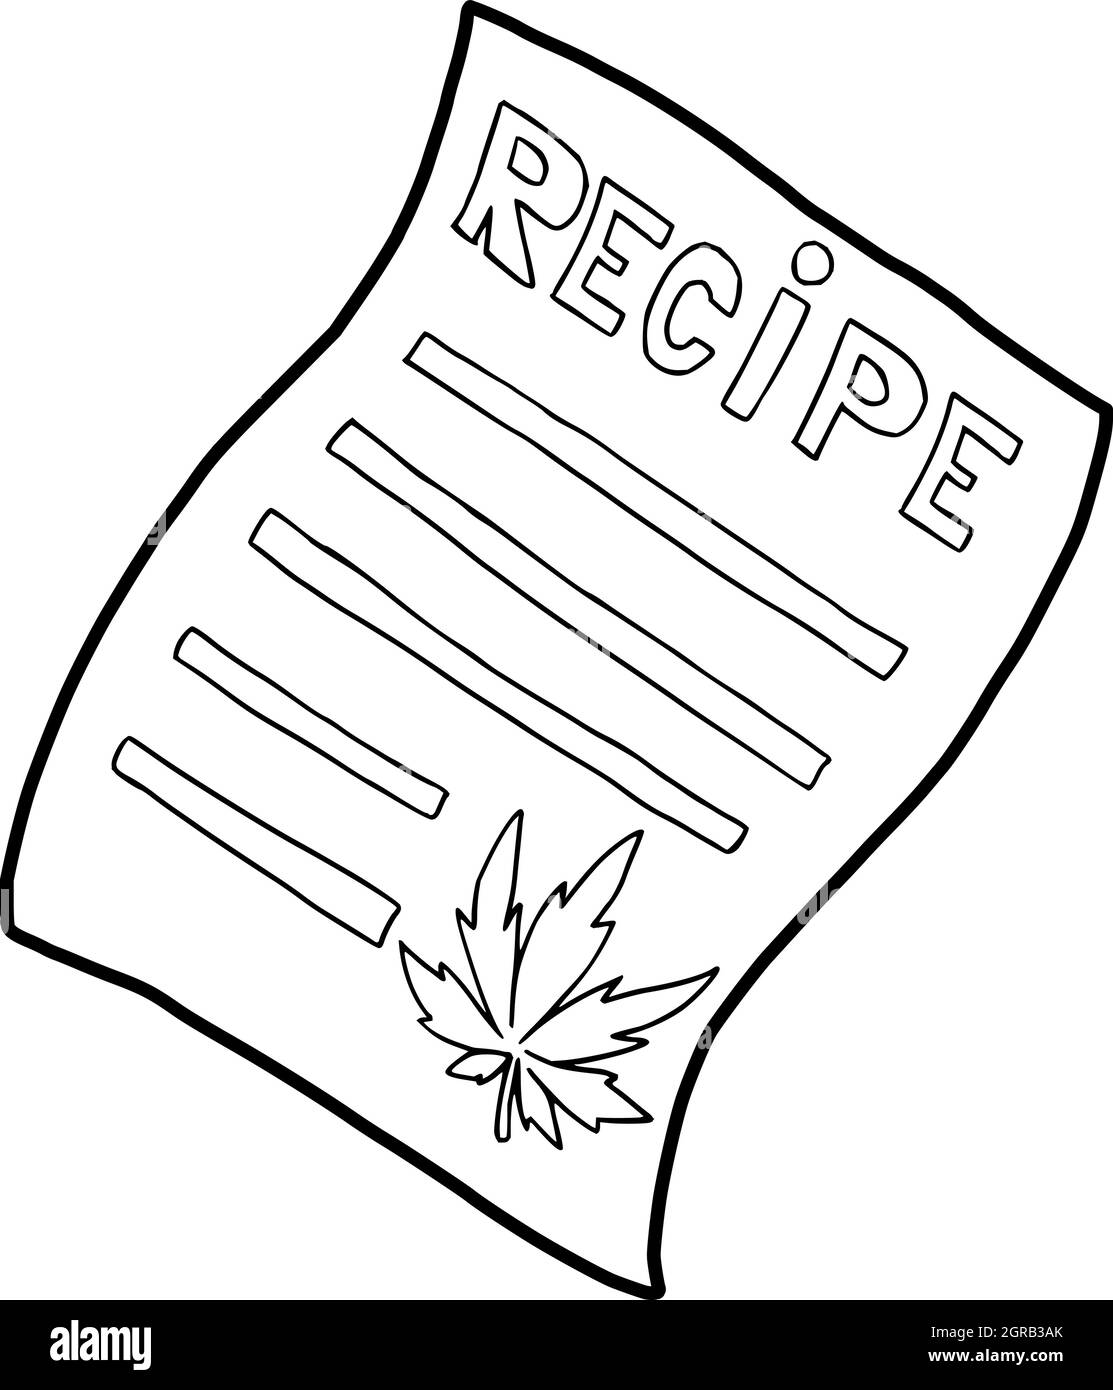 Marijuana recipe icon, outline style Stock Vector